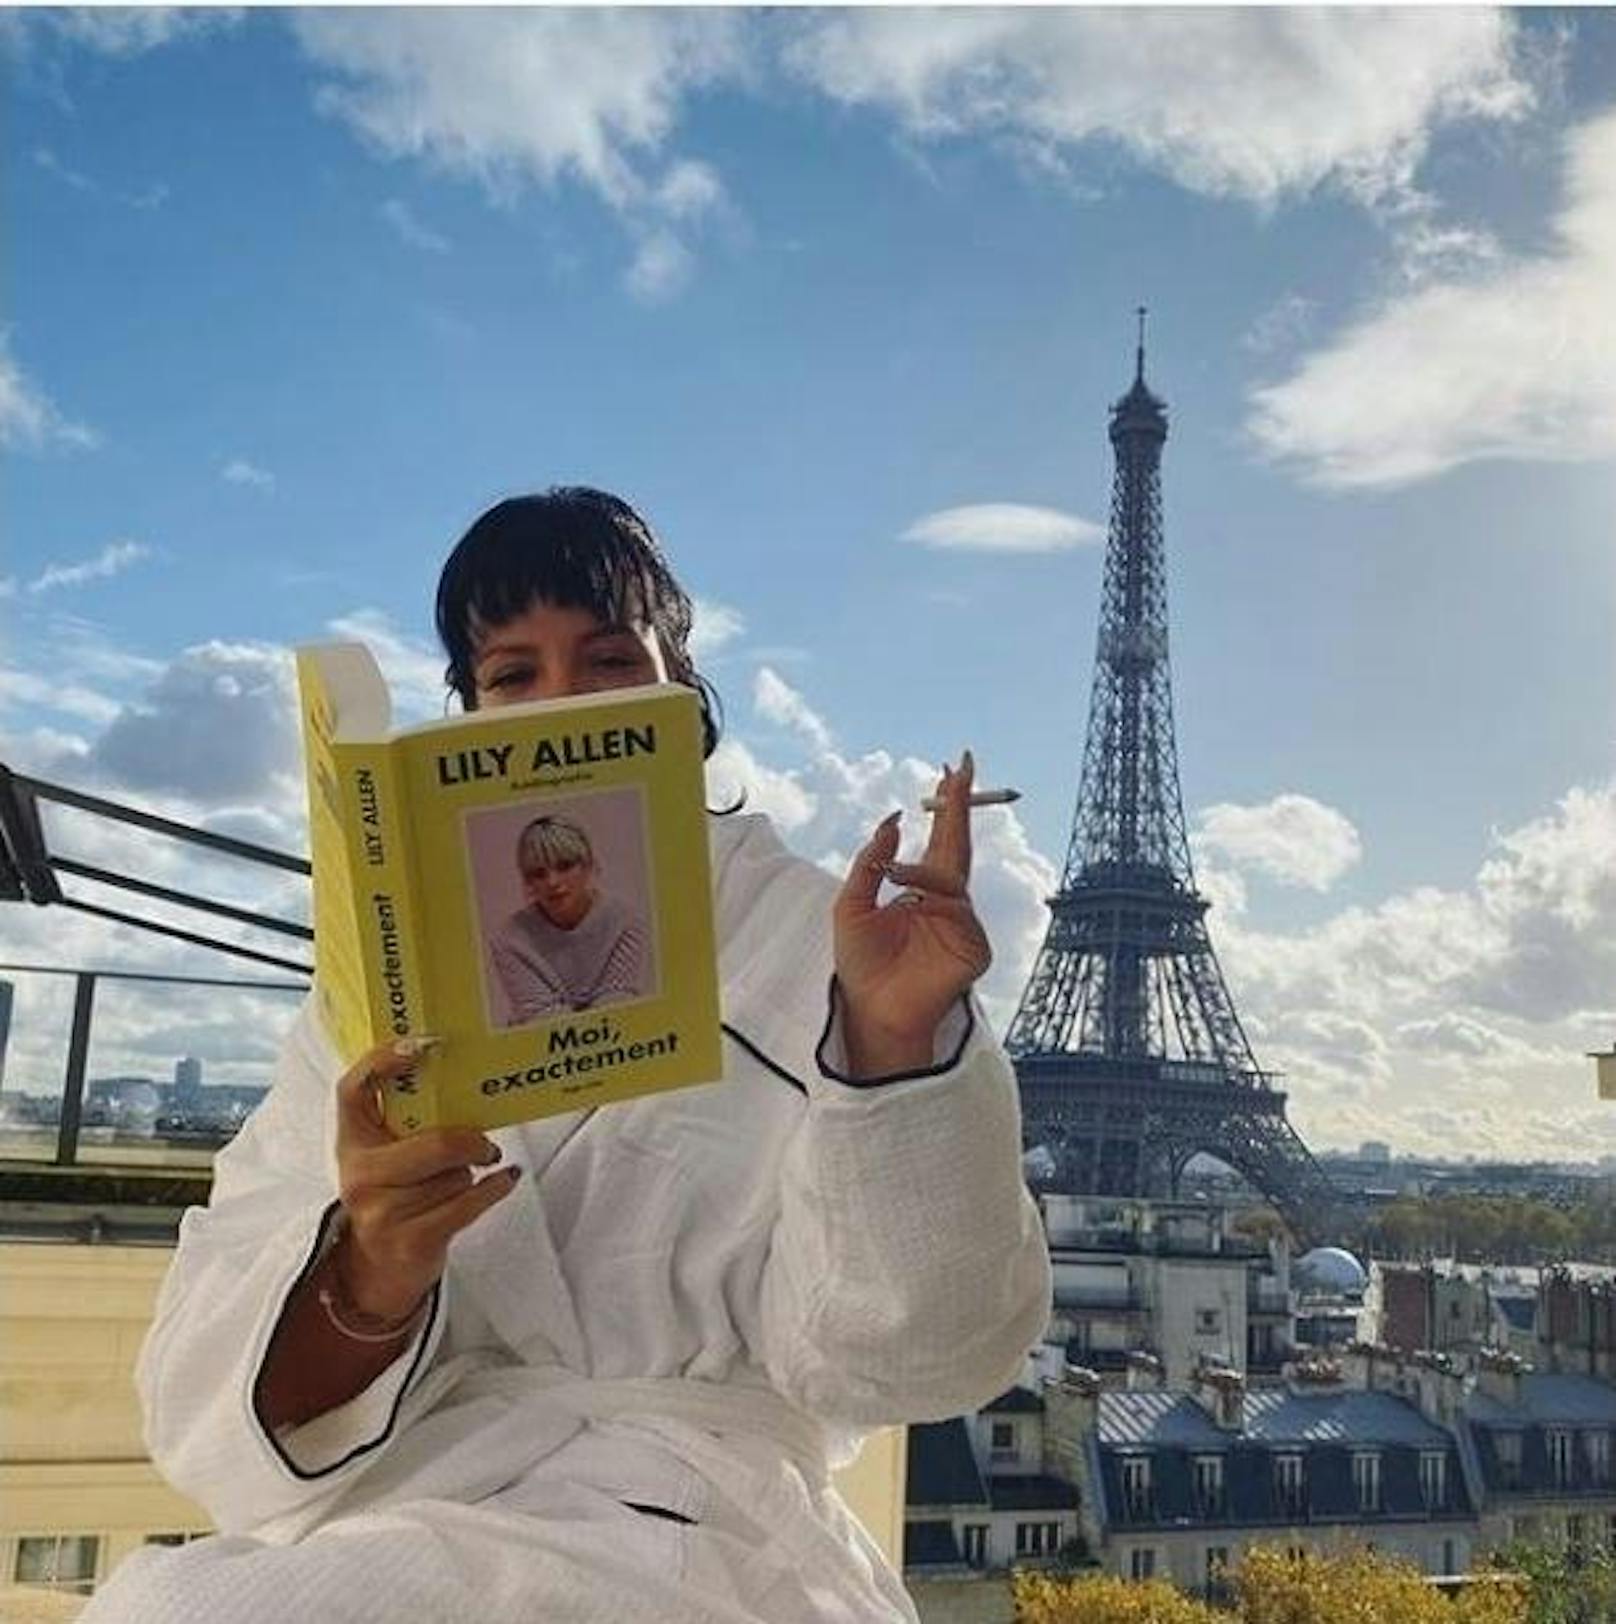 13.11.2019: Sängerin Lilly Allen genießt gerade ihr freie Zeit in Paris. Gleichzeitig macht sie auf ihr neues Buch ("My Thoughts Exactly: Das Leben, wie ich es sehe") aufmerksam, das am 14.11. erscheint. 